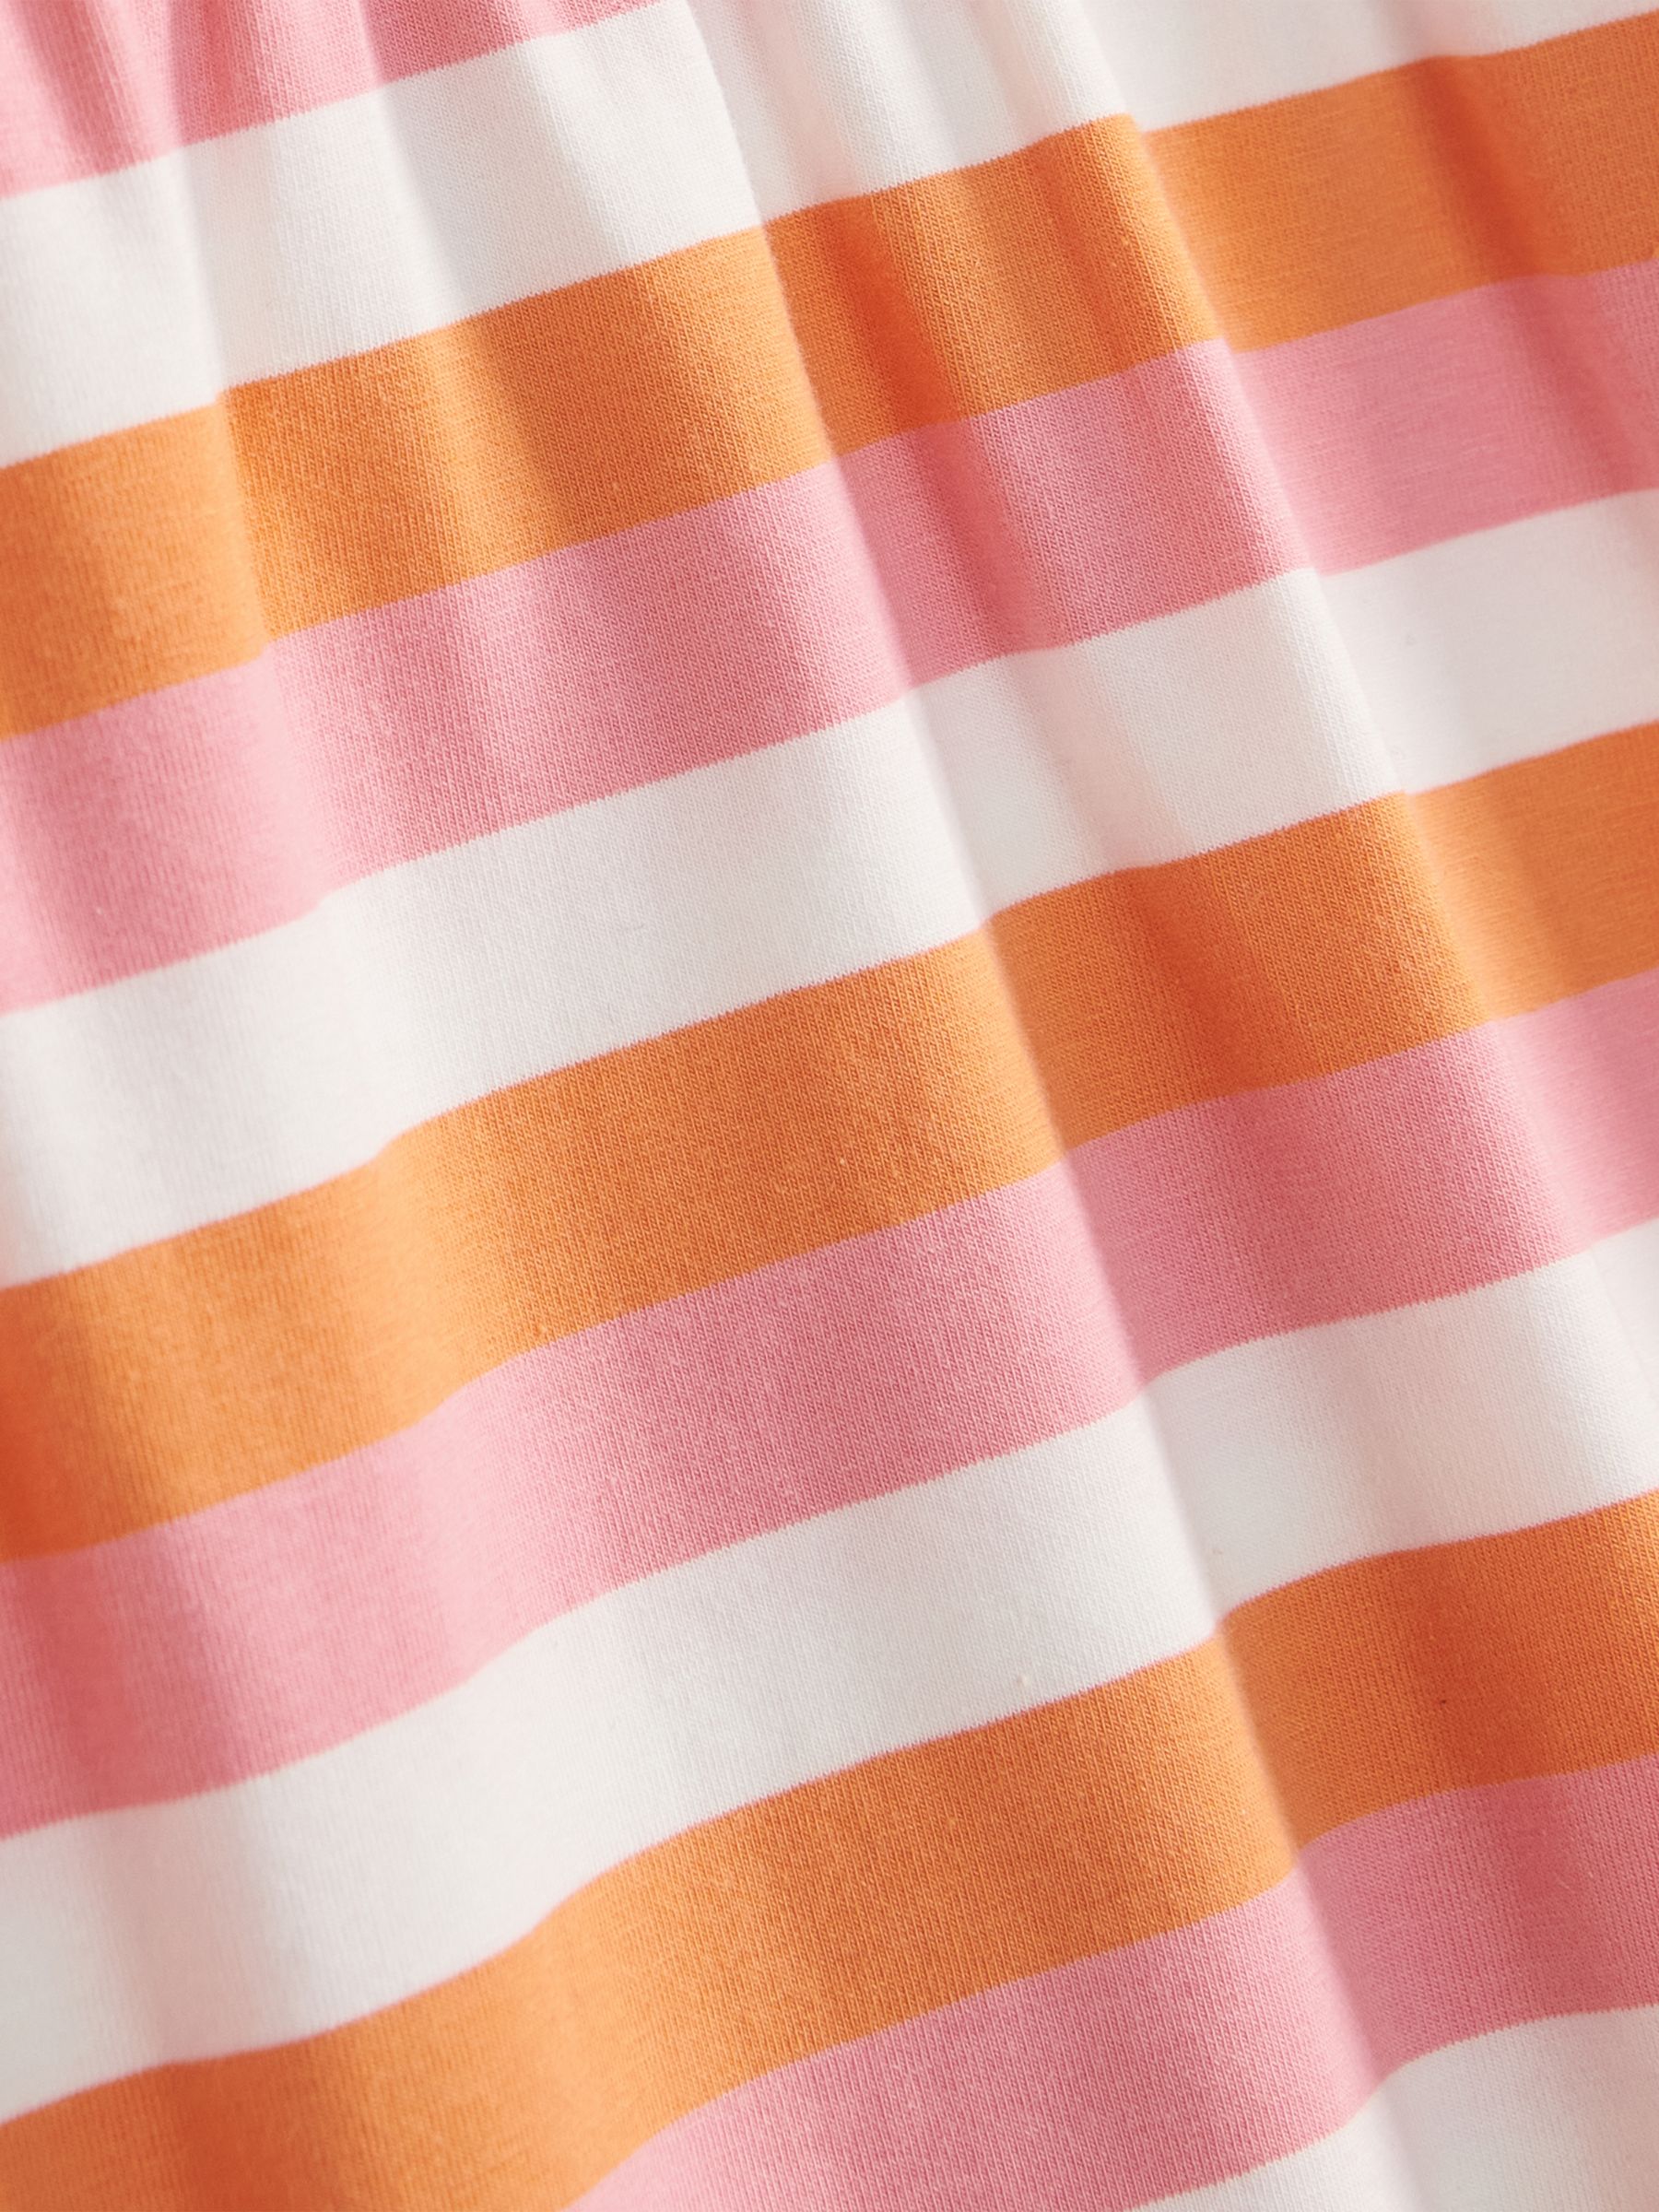 Buy Barbour Kids' Striped Eliza Dress, Multi Online at johnlewis.com